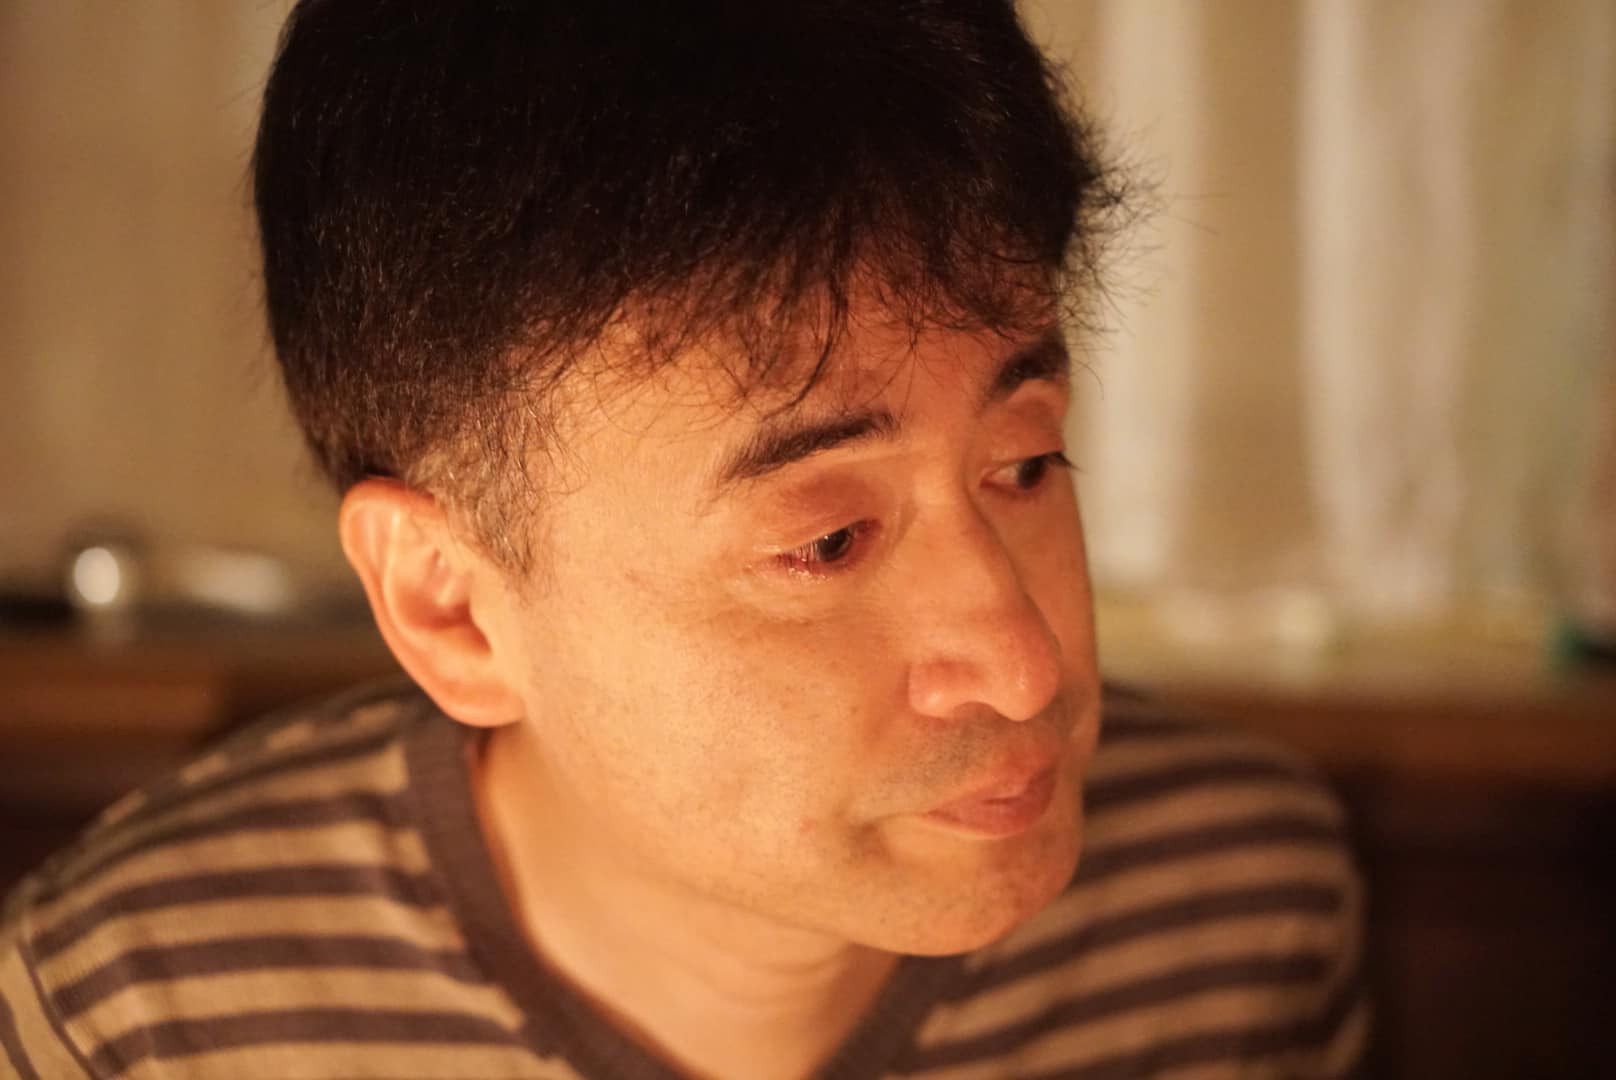 Chồng Nhật bật khóc khi đọc thư vợ Việt trong tiệc kỷ niệm ngày cưới